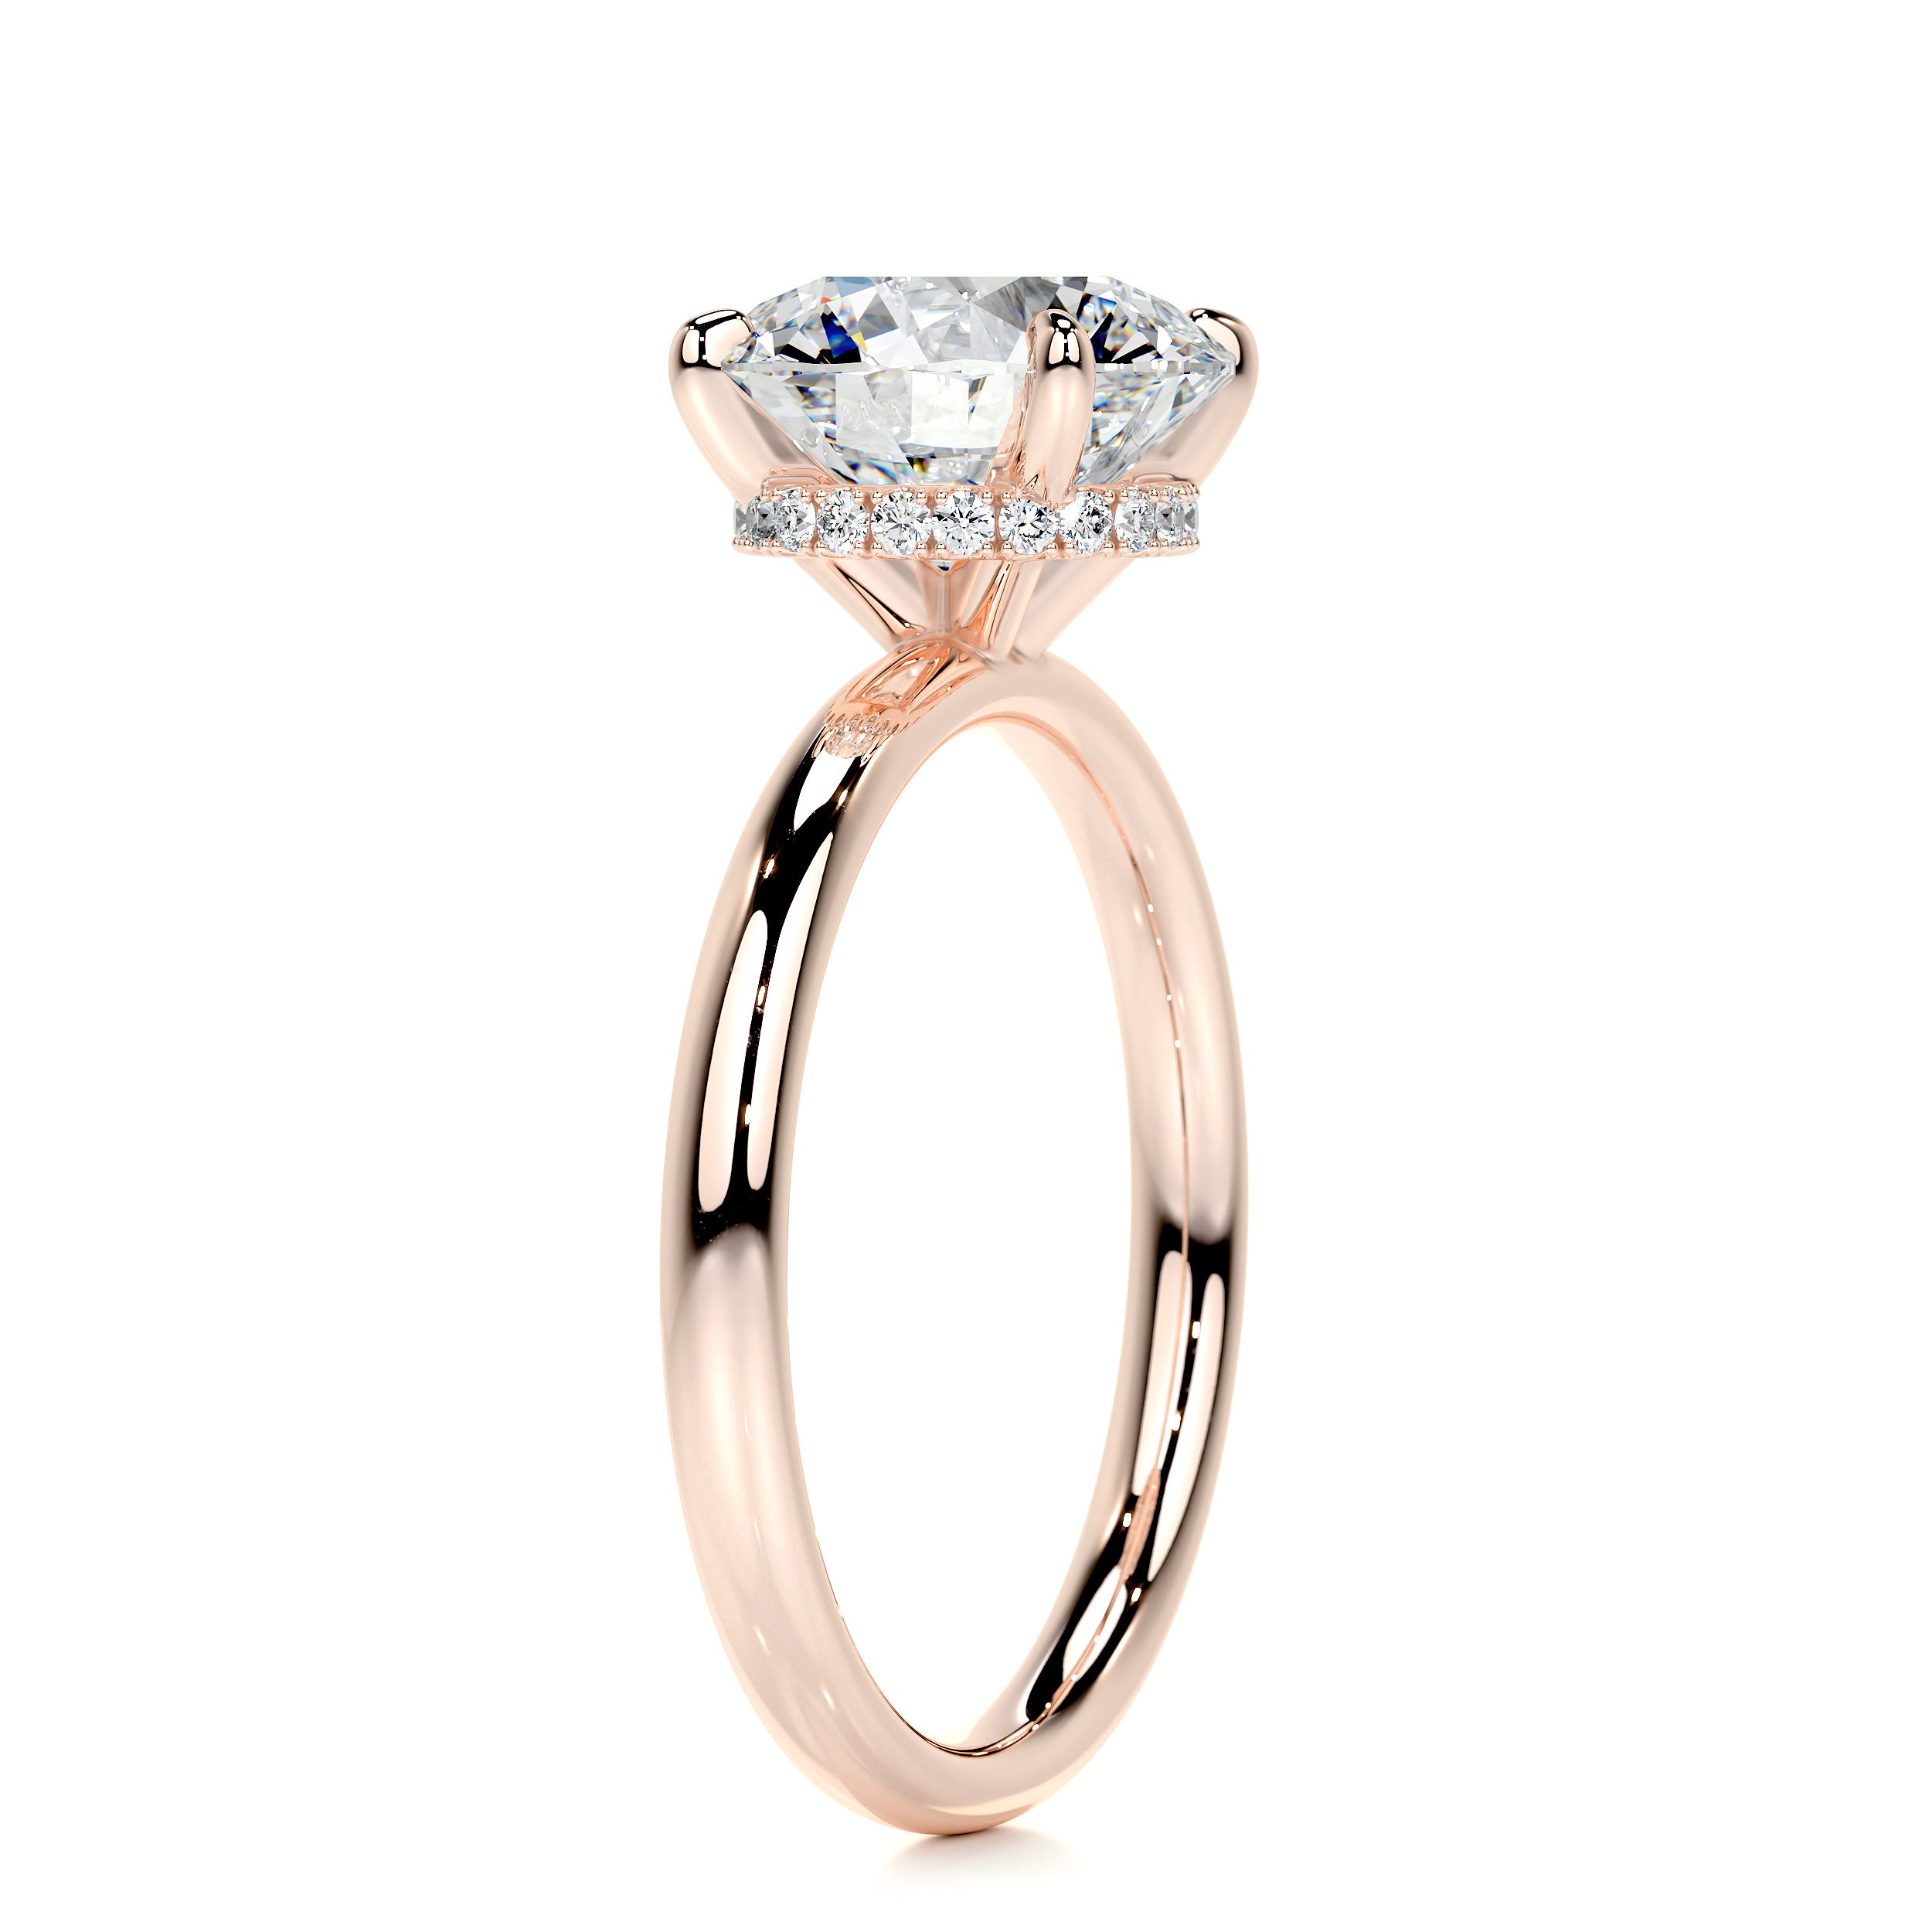 Willow Diamond Engagement Ring   (2.1 Carat) -14K Rose Gold